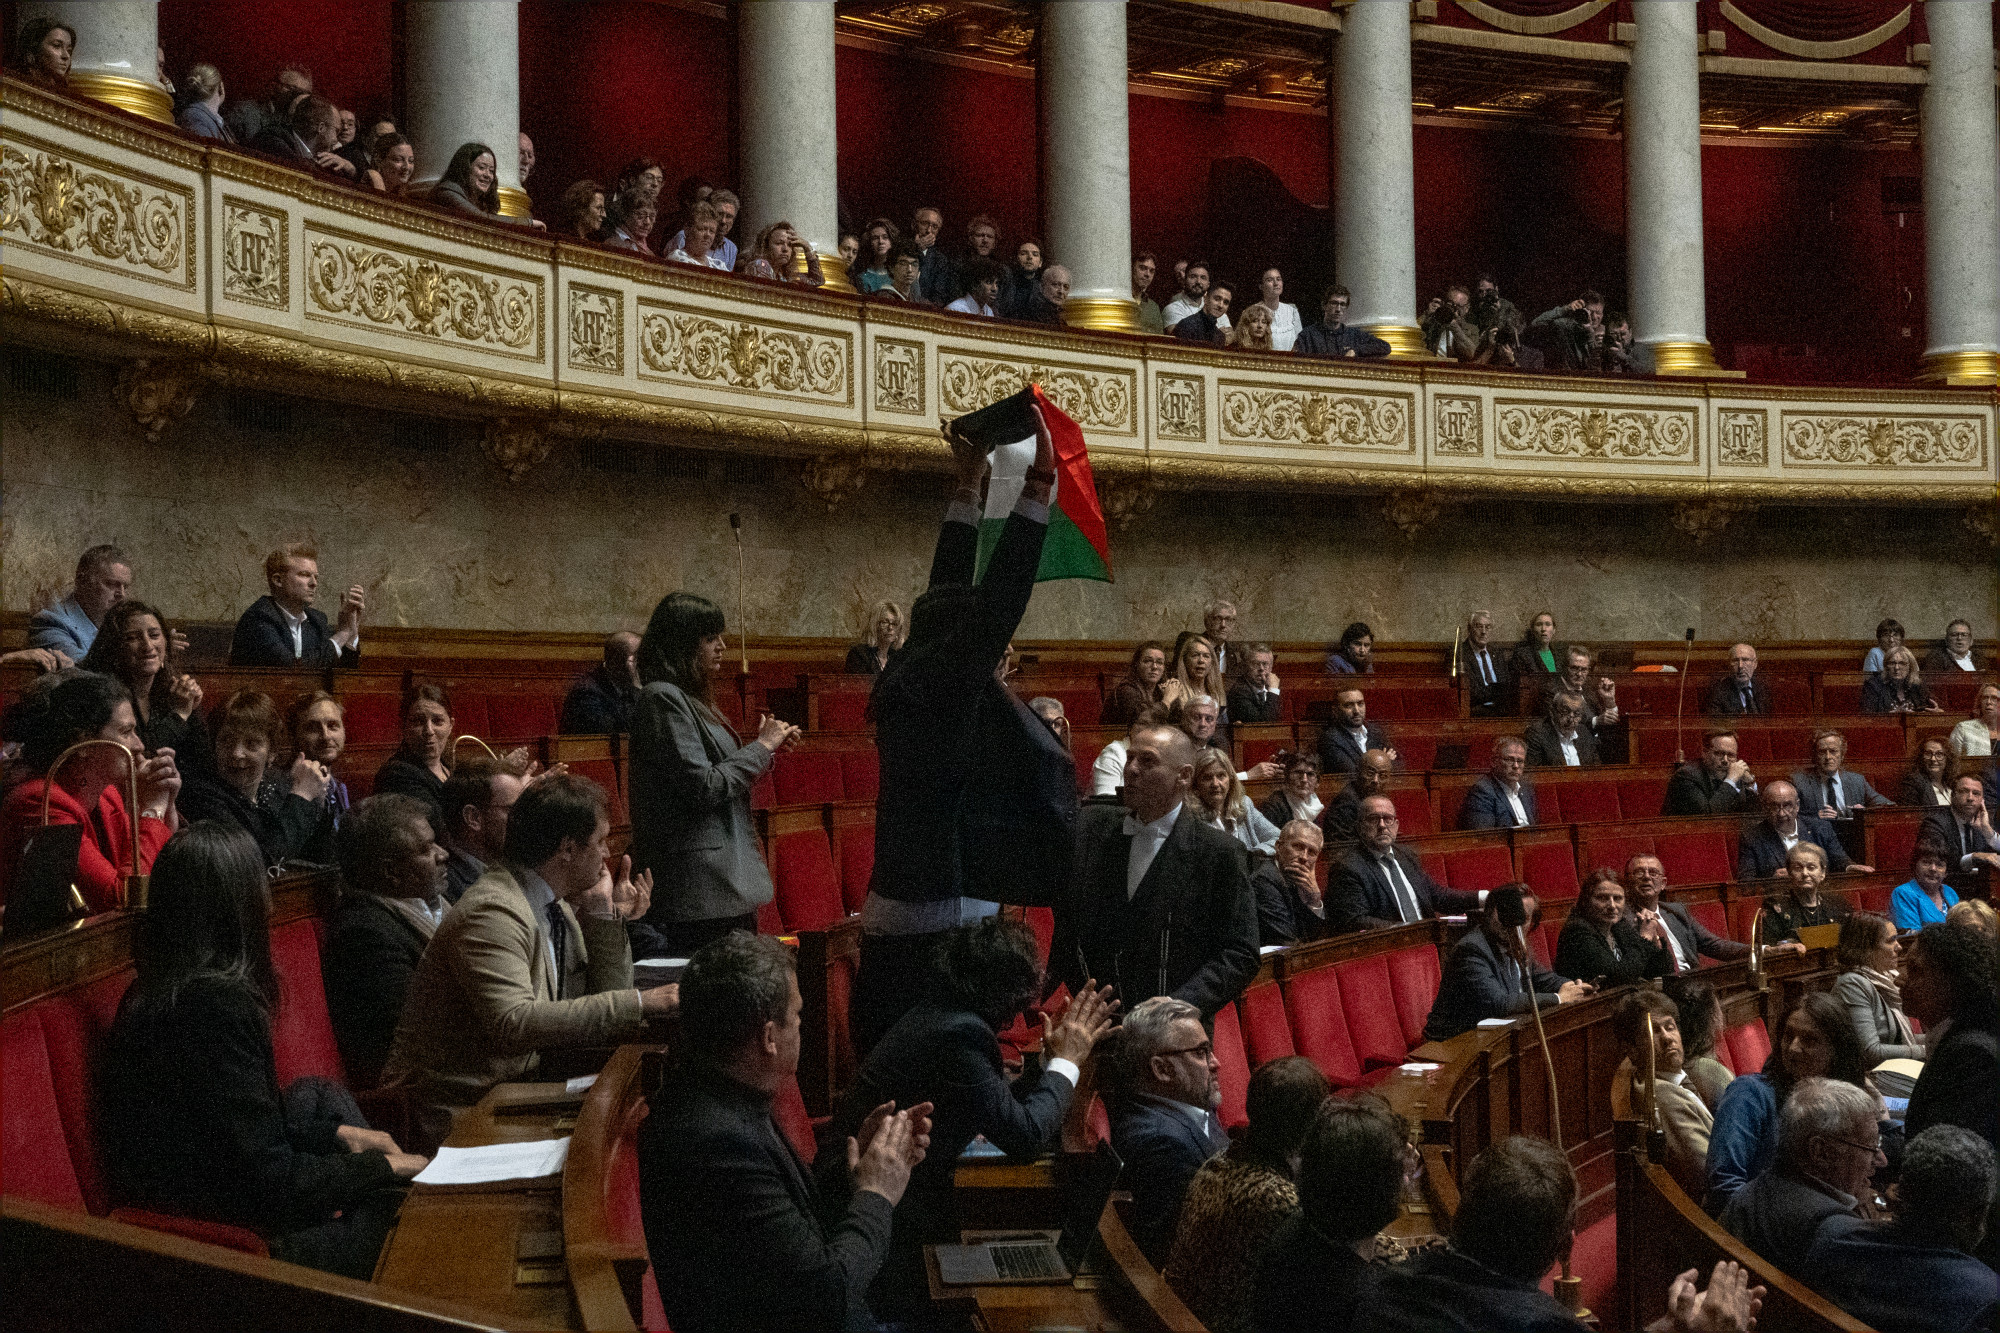 Palesztin zászlót mutatott fel egy képviselő a francia parlamentben, két hétre felfüggesztették